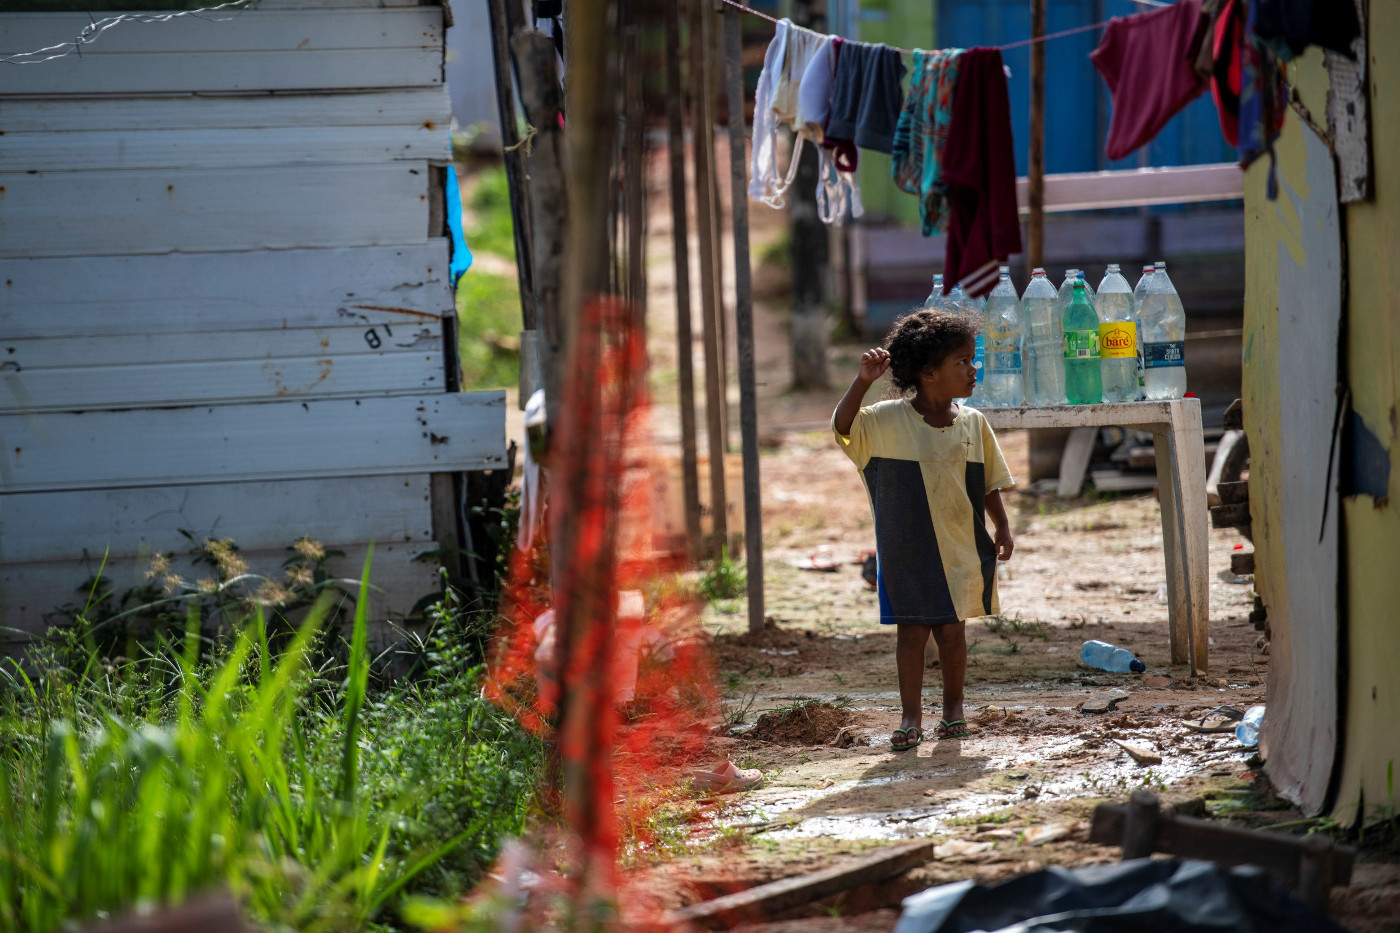 Venezolanisches Flüchtlingskind in einem Flüchtlingscamp in Manaus, Brasilien. Symbolbild: Adveniat/Florian Kopp